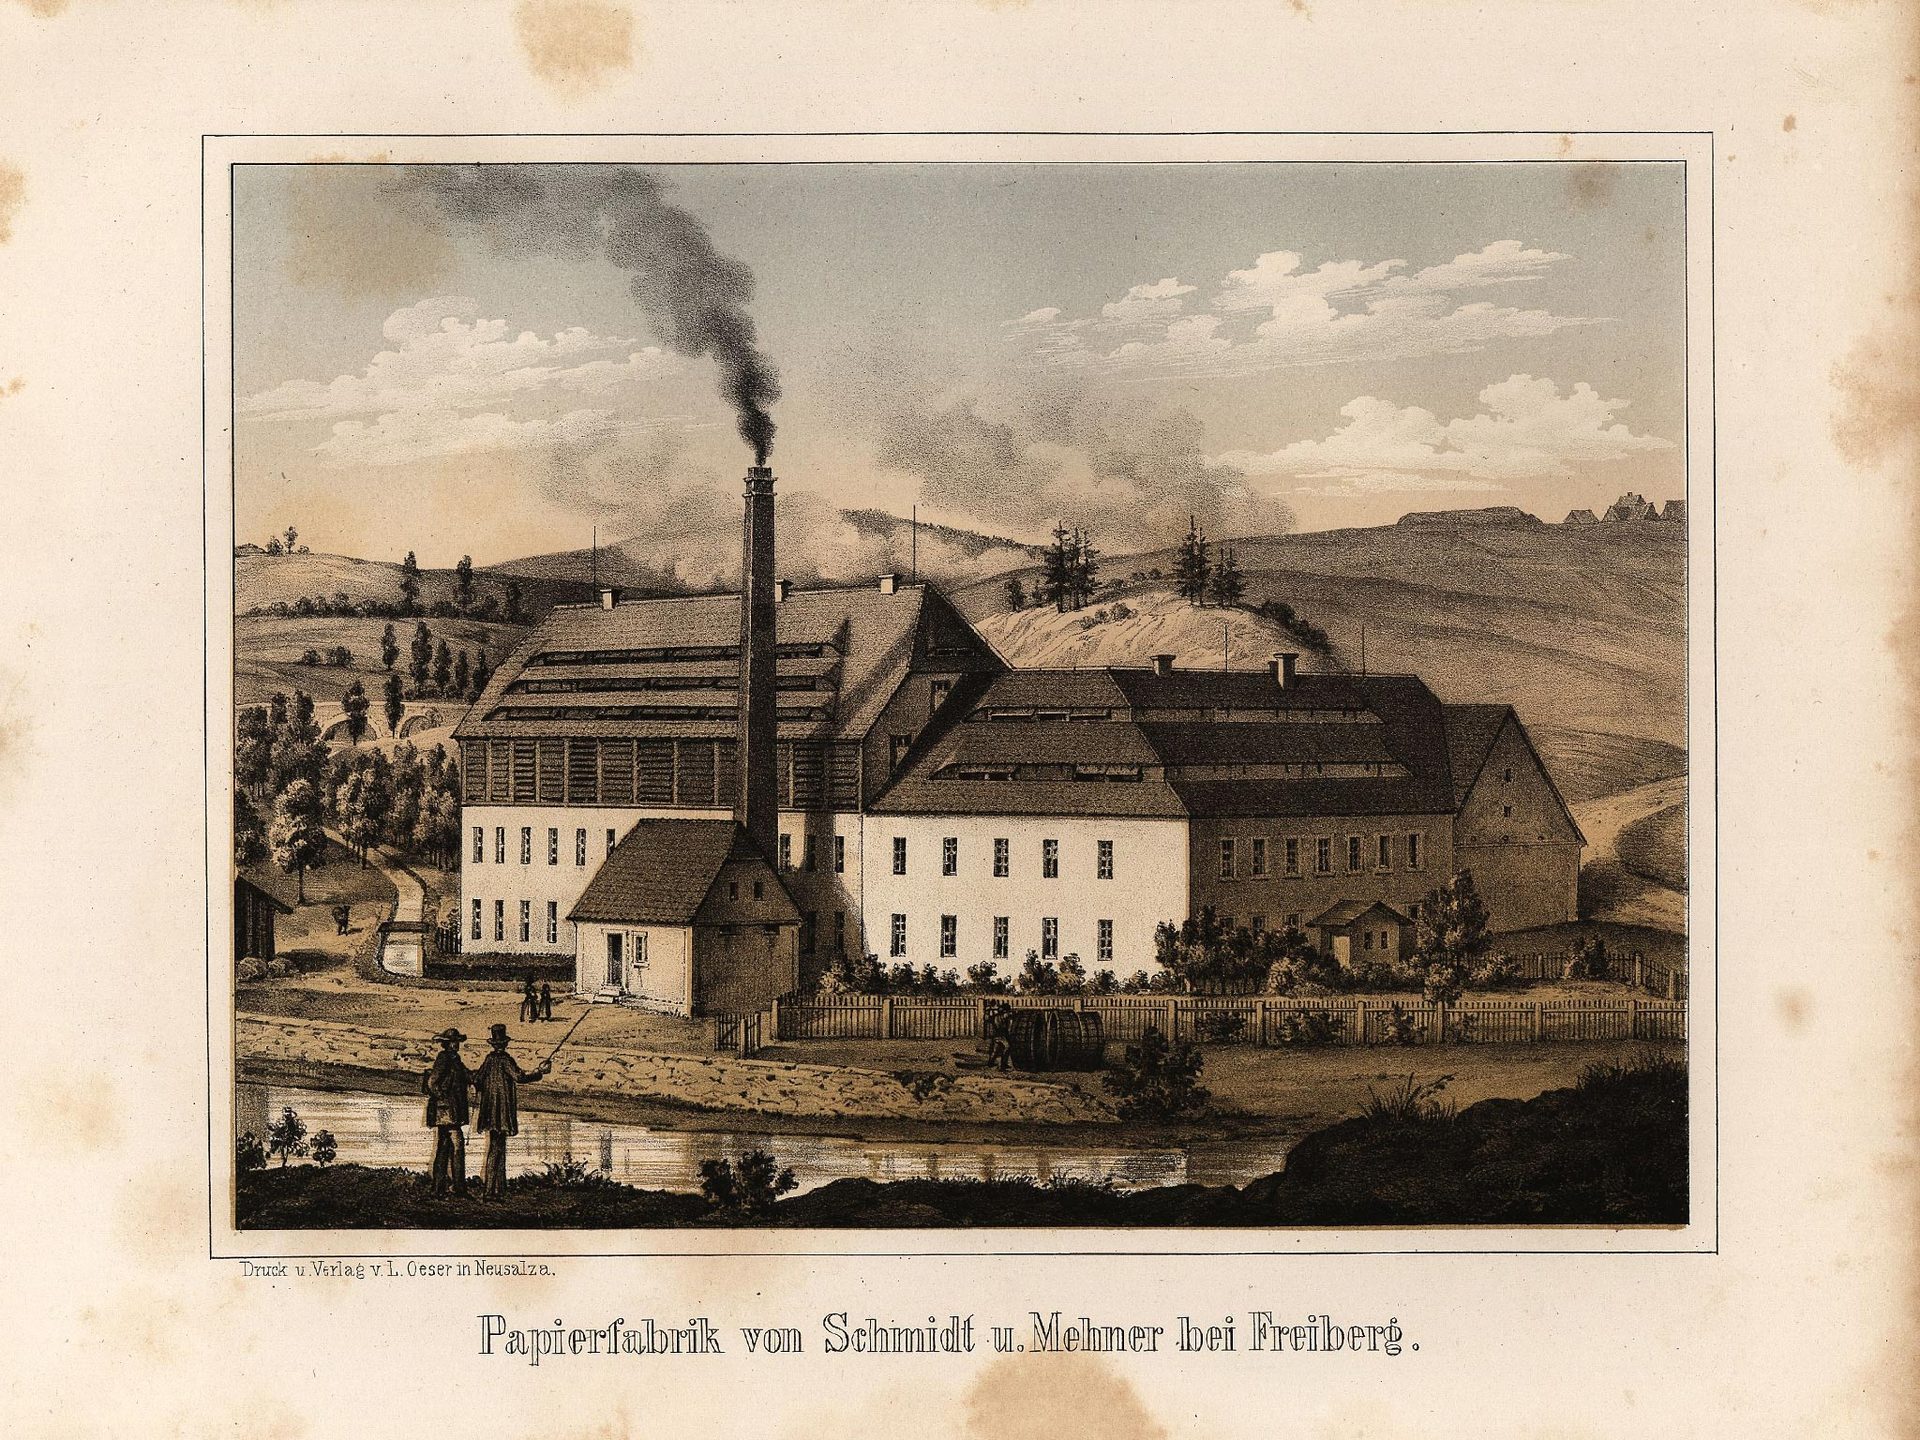 Papierfabrik von Schmidt u. Mehner bei Freiberg